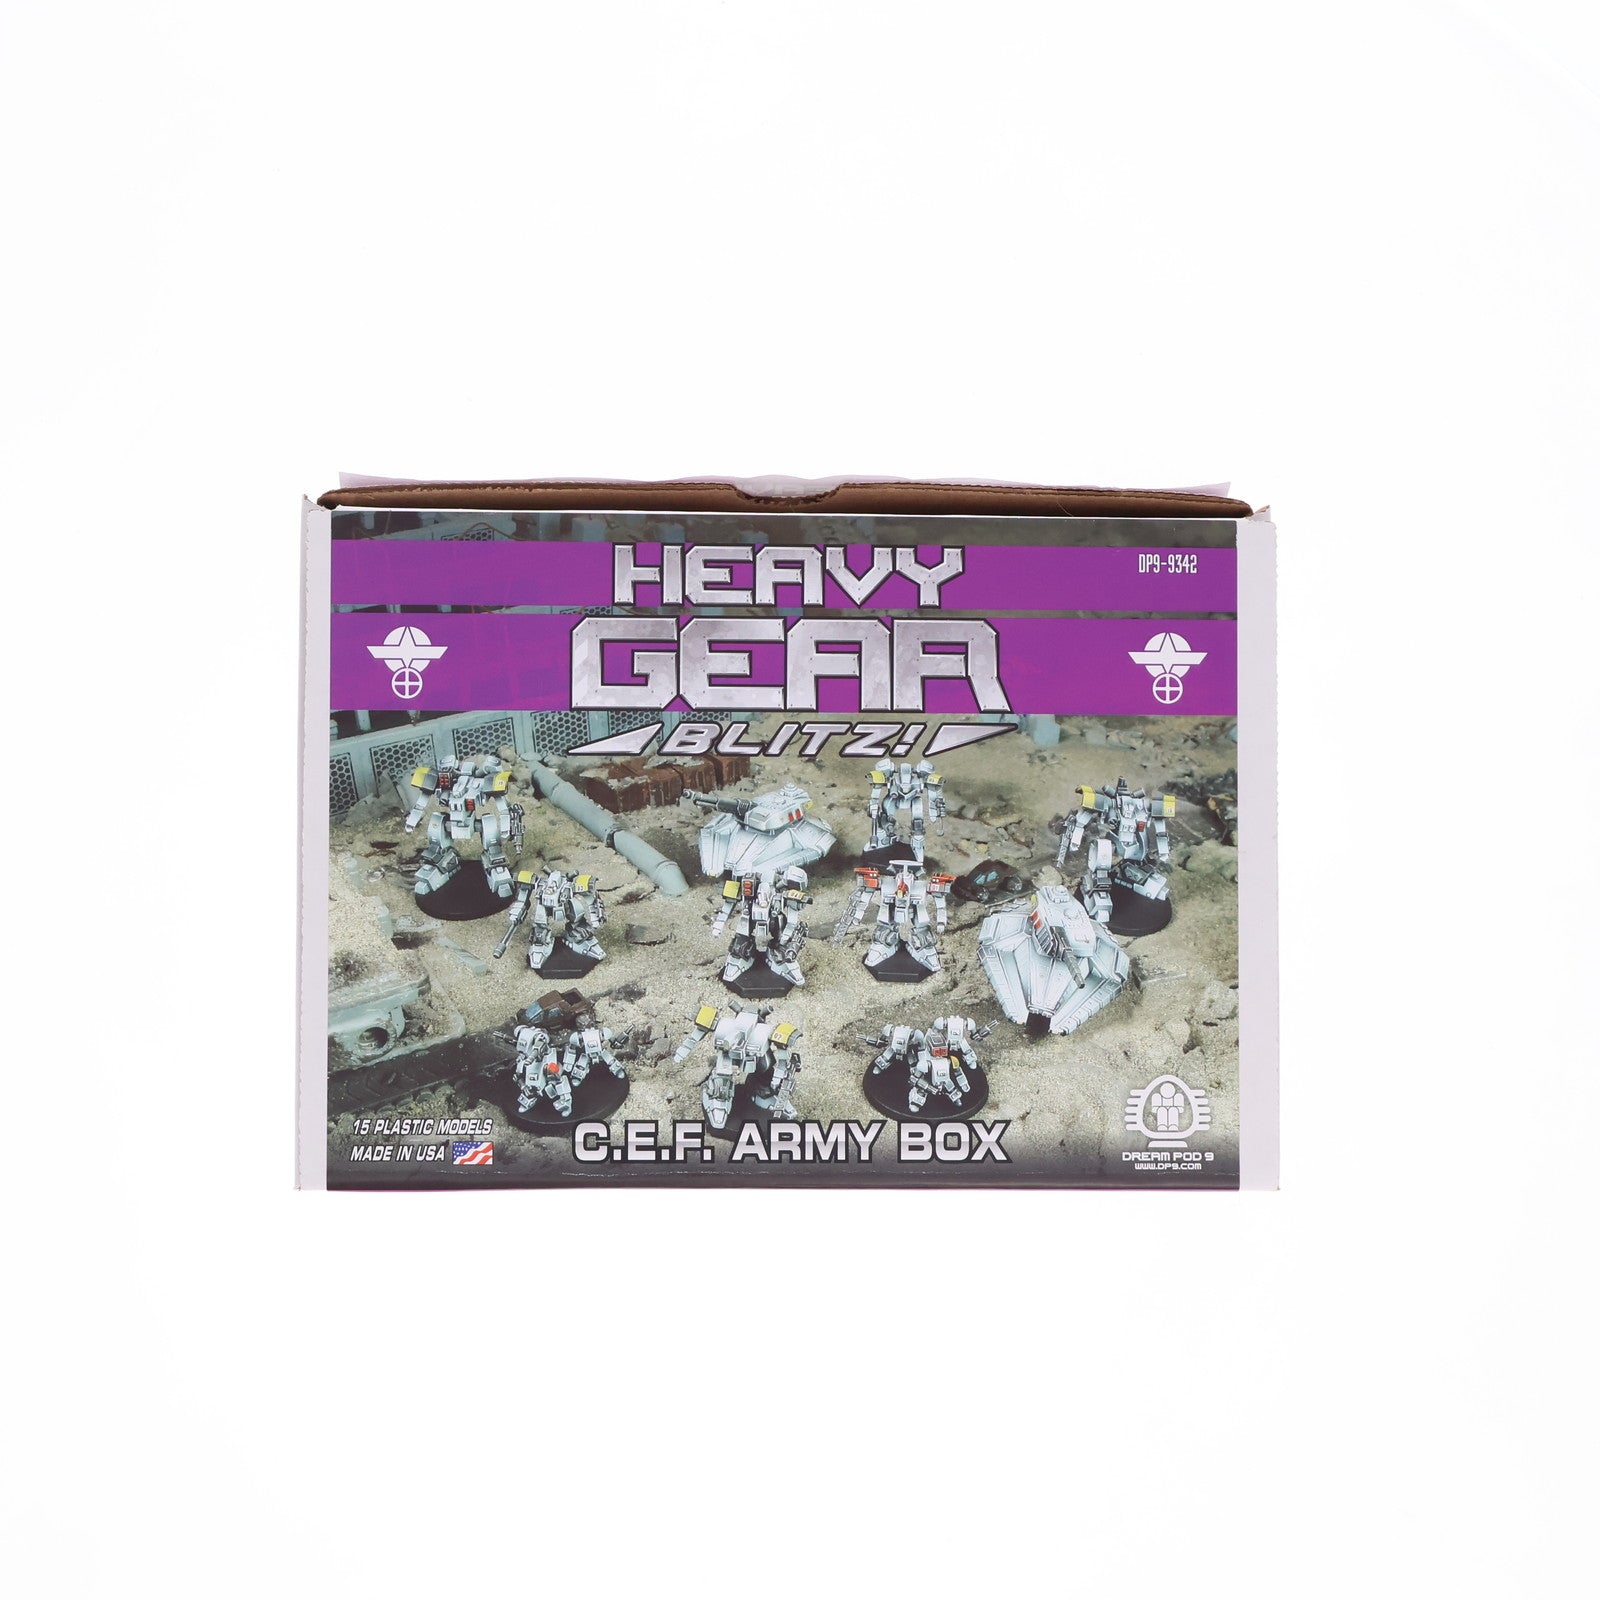 【中古即納】[PTM]1/144 Heavy Gear Blitz!(ヘヴィギアブリッツ) C.E.F. Army Box プラモデル(DP9-9342) Dream Pod 9(19991231)